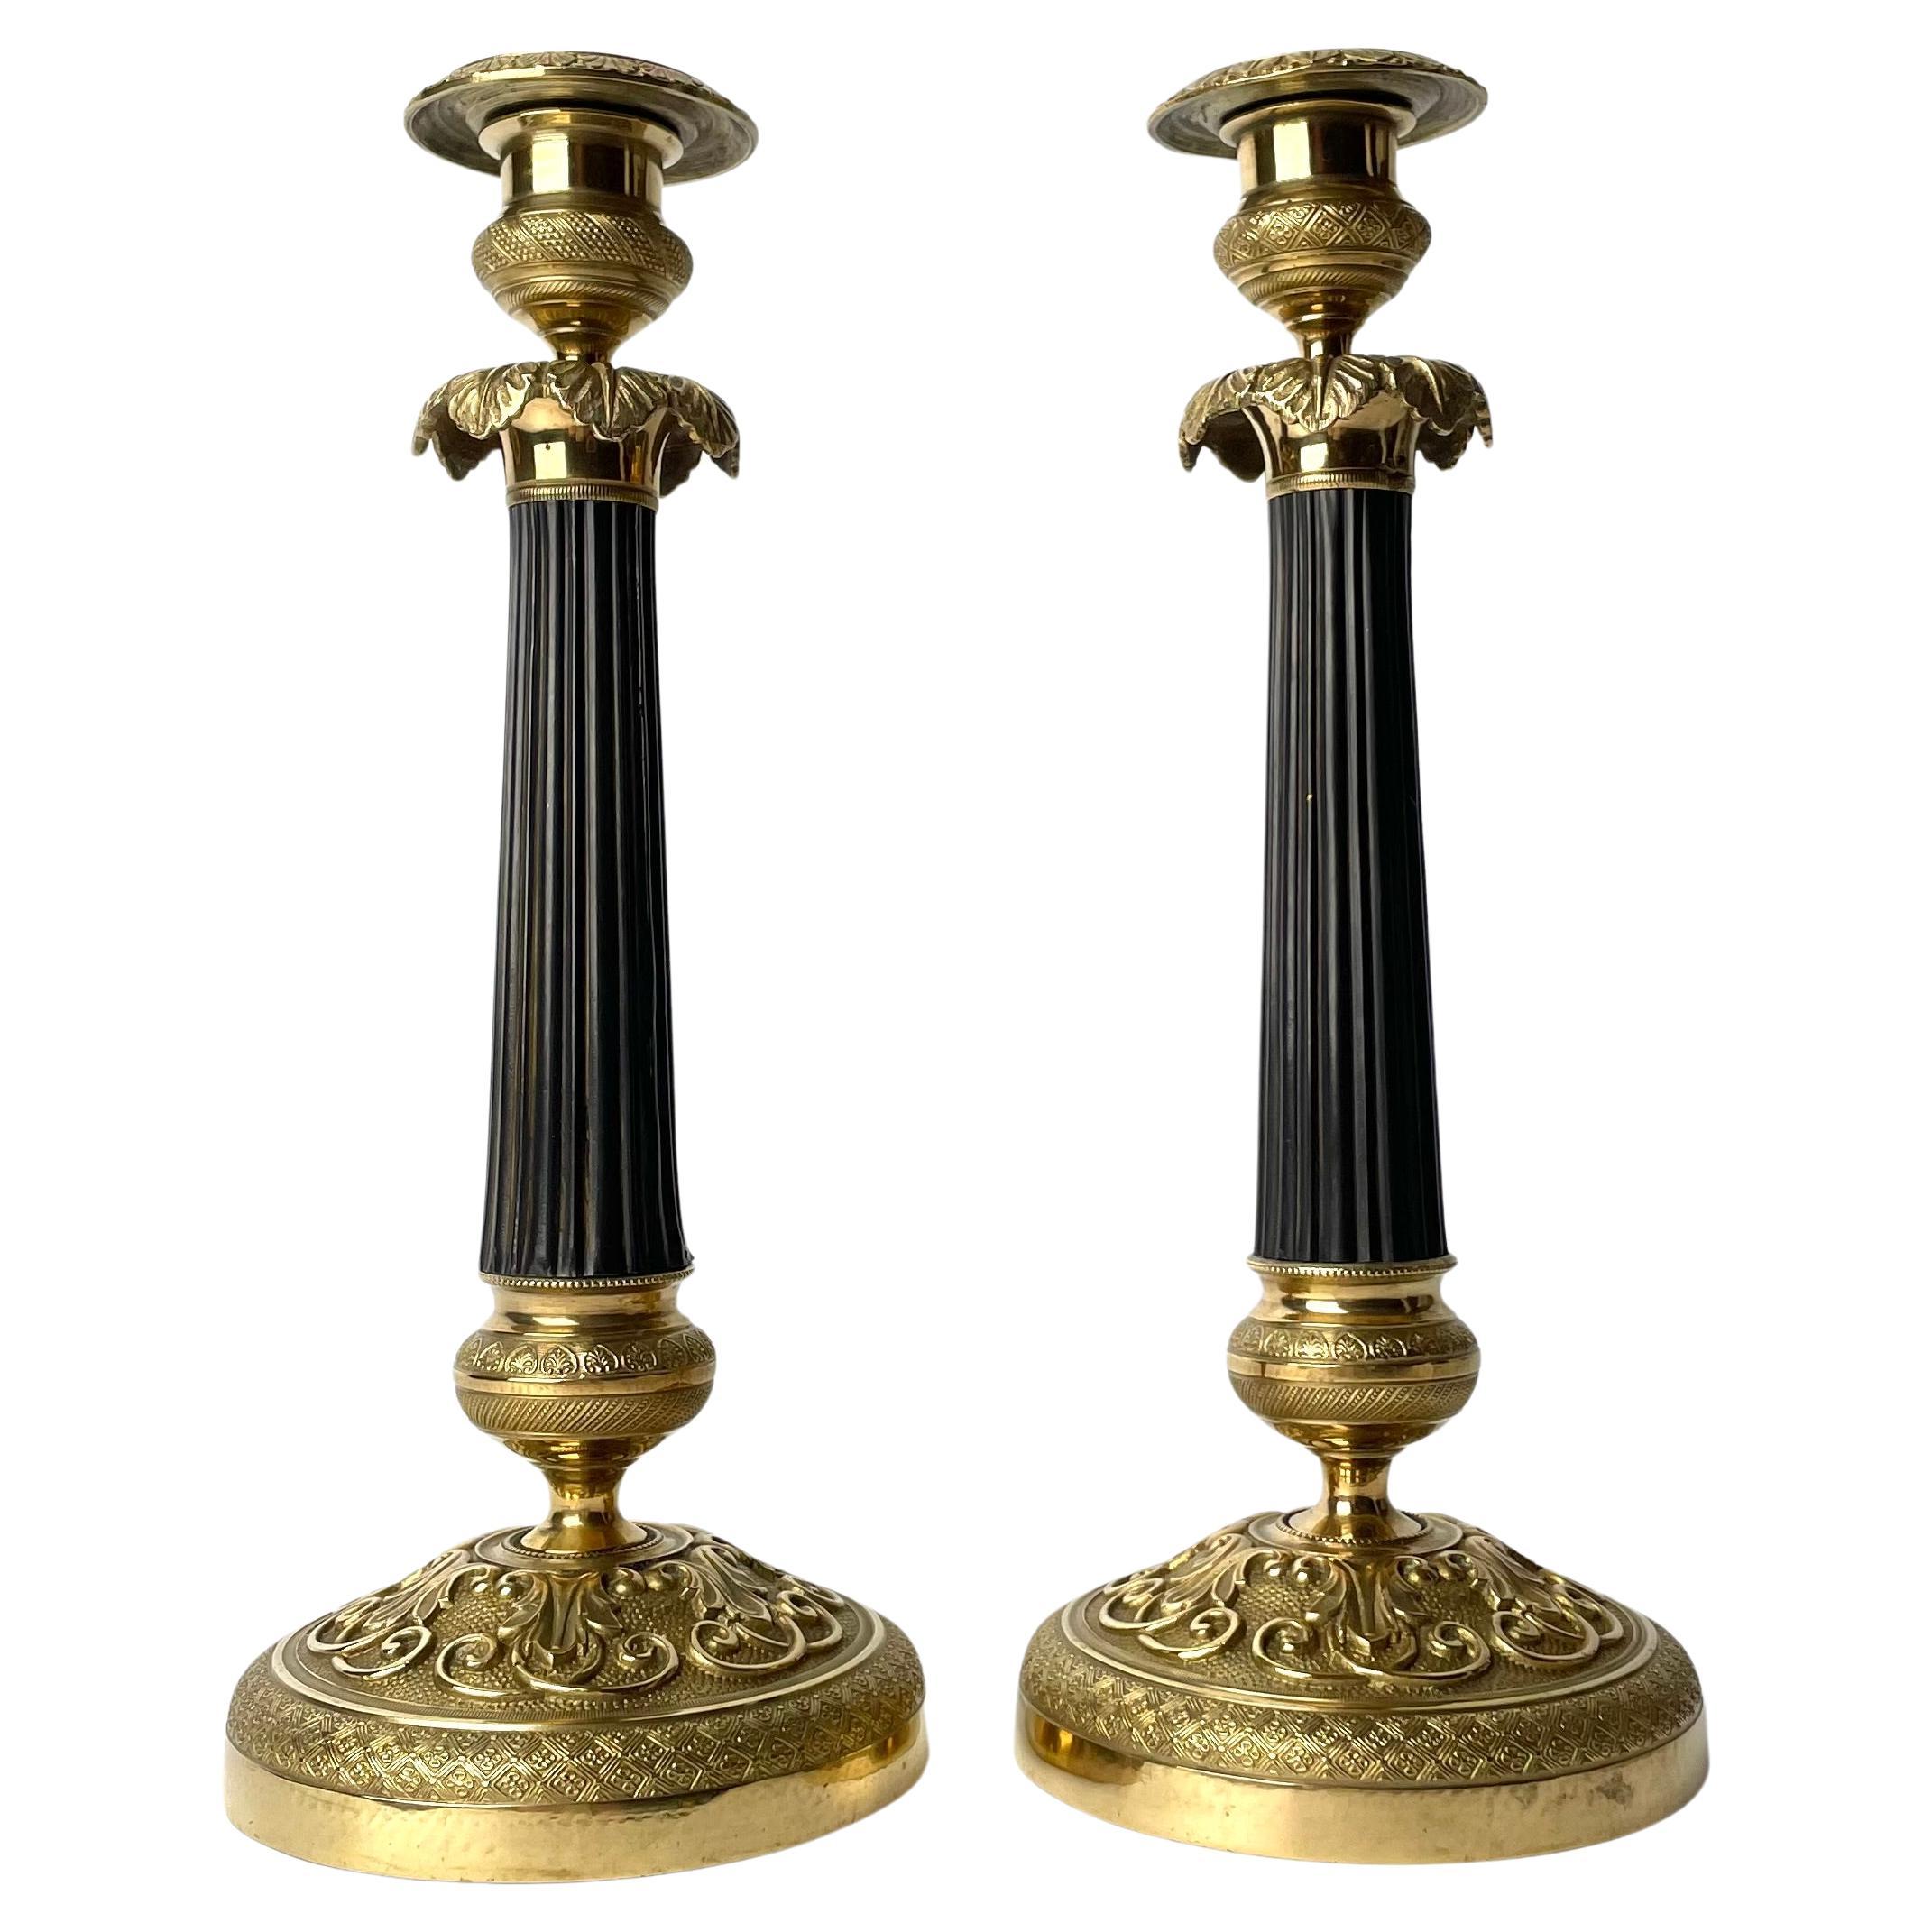 Paire de chandeliers Empire des années 1820 en bronze doré et foncé patiné